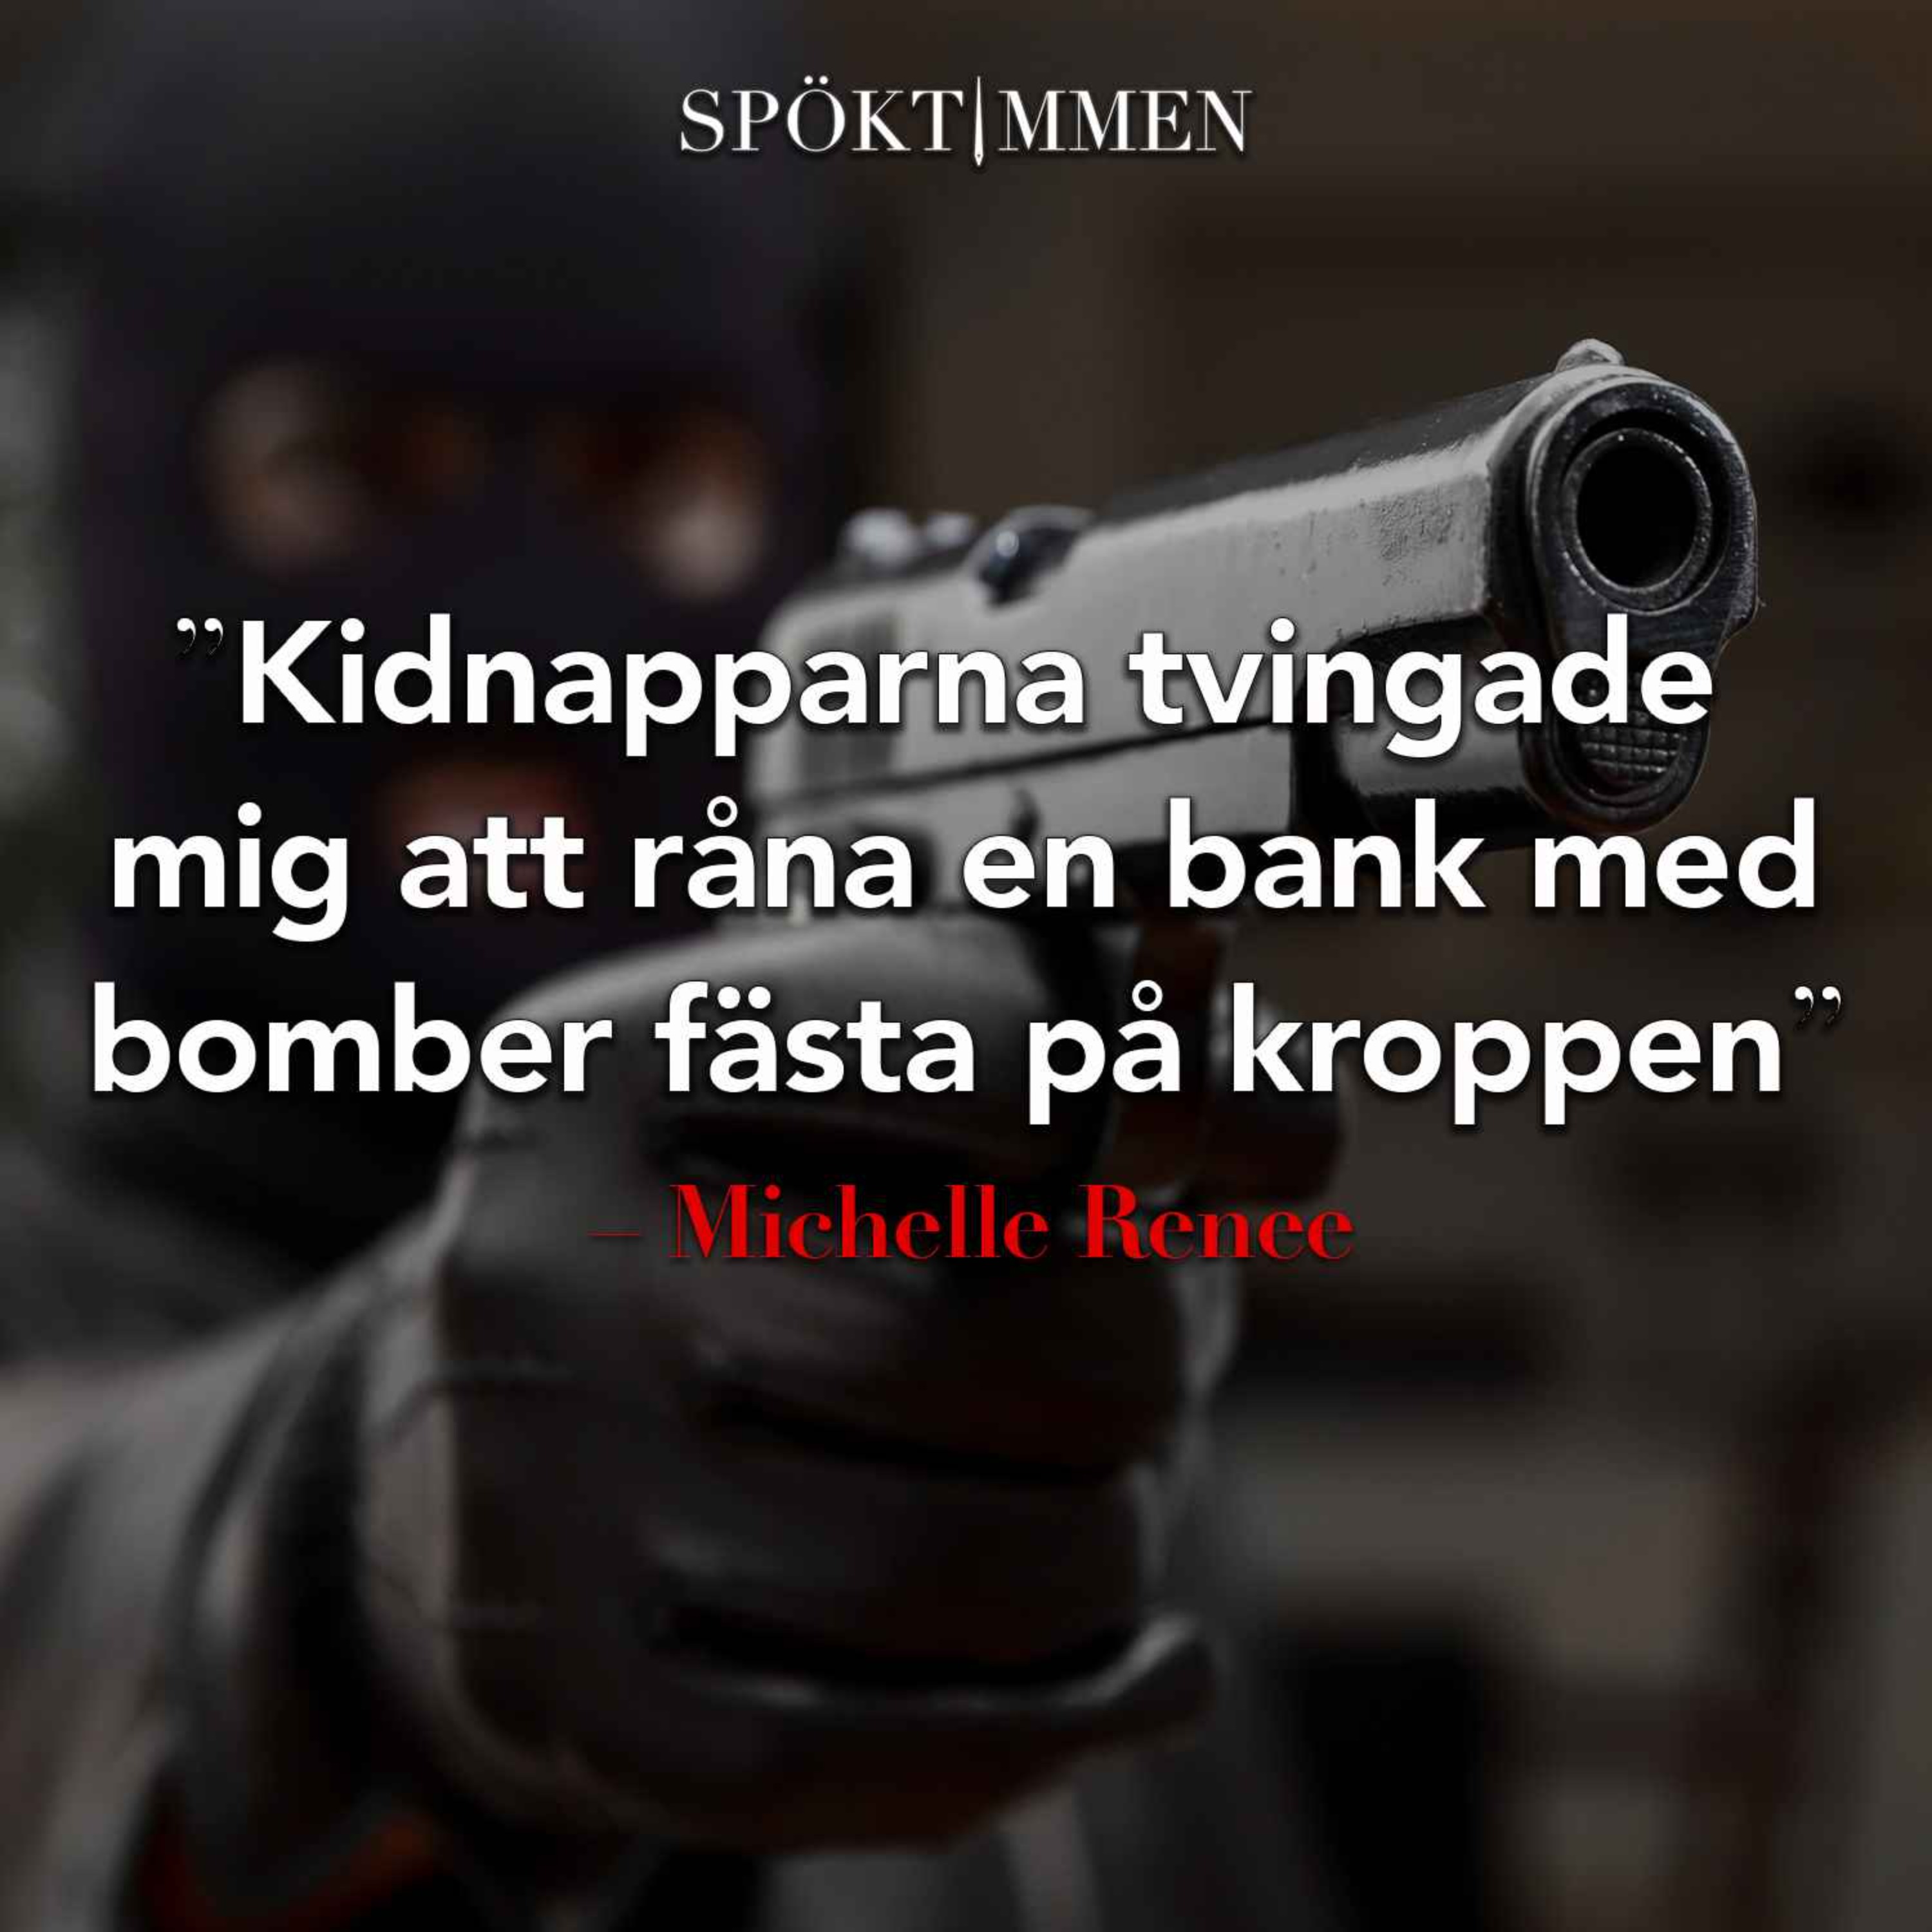 "Kidnapparna tvingade mig att råna en bank, med bomber fästa på kroppen" – Michelle Renee